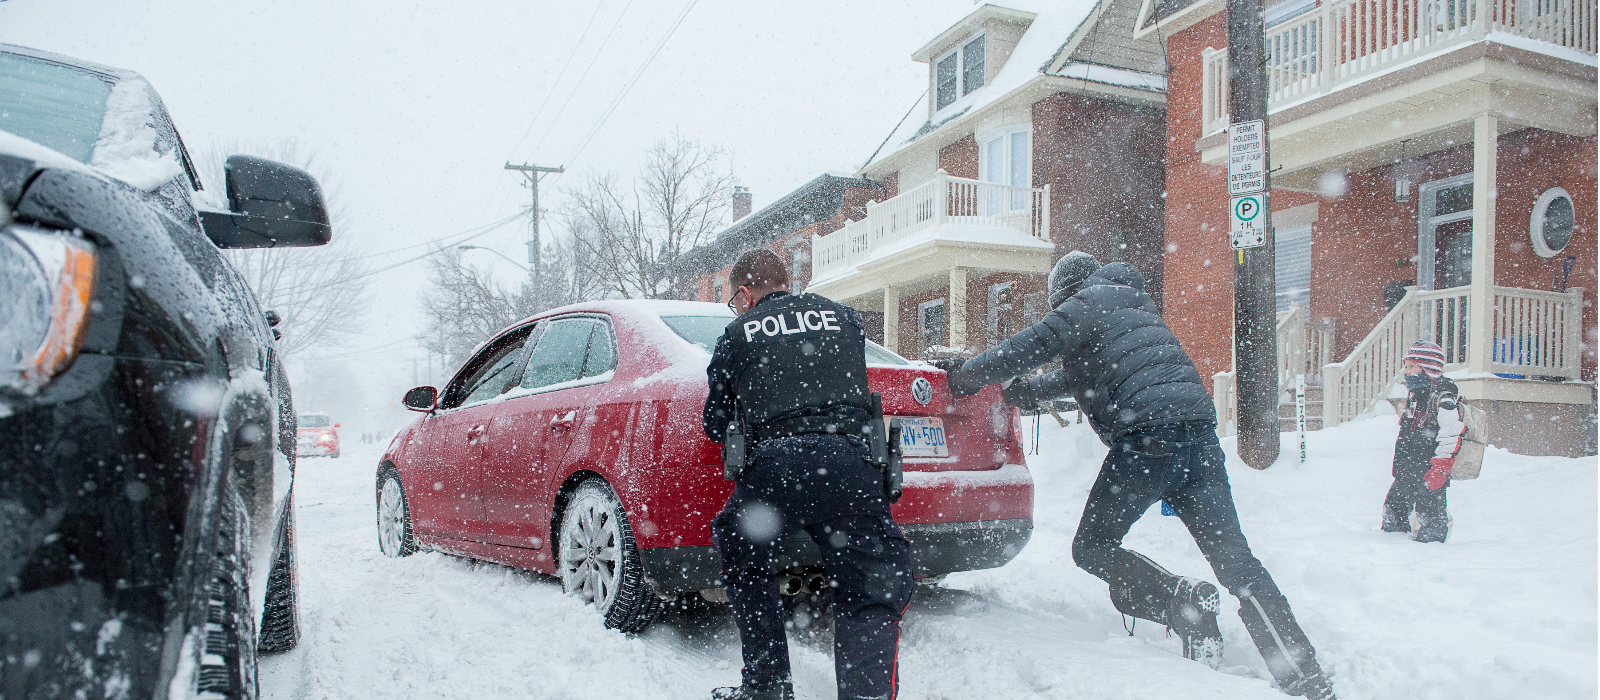 Un agent de la police communautaire aide un résident pendant une tempête hivernale en poussant sa voiture bloquée.